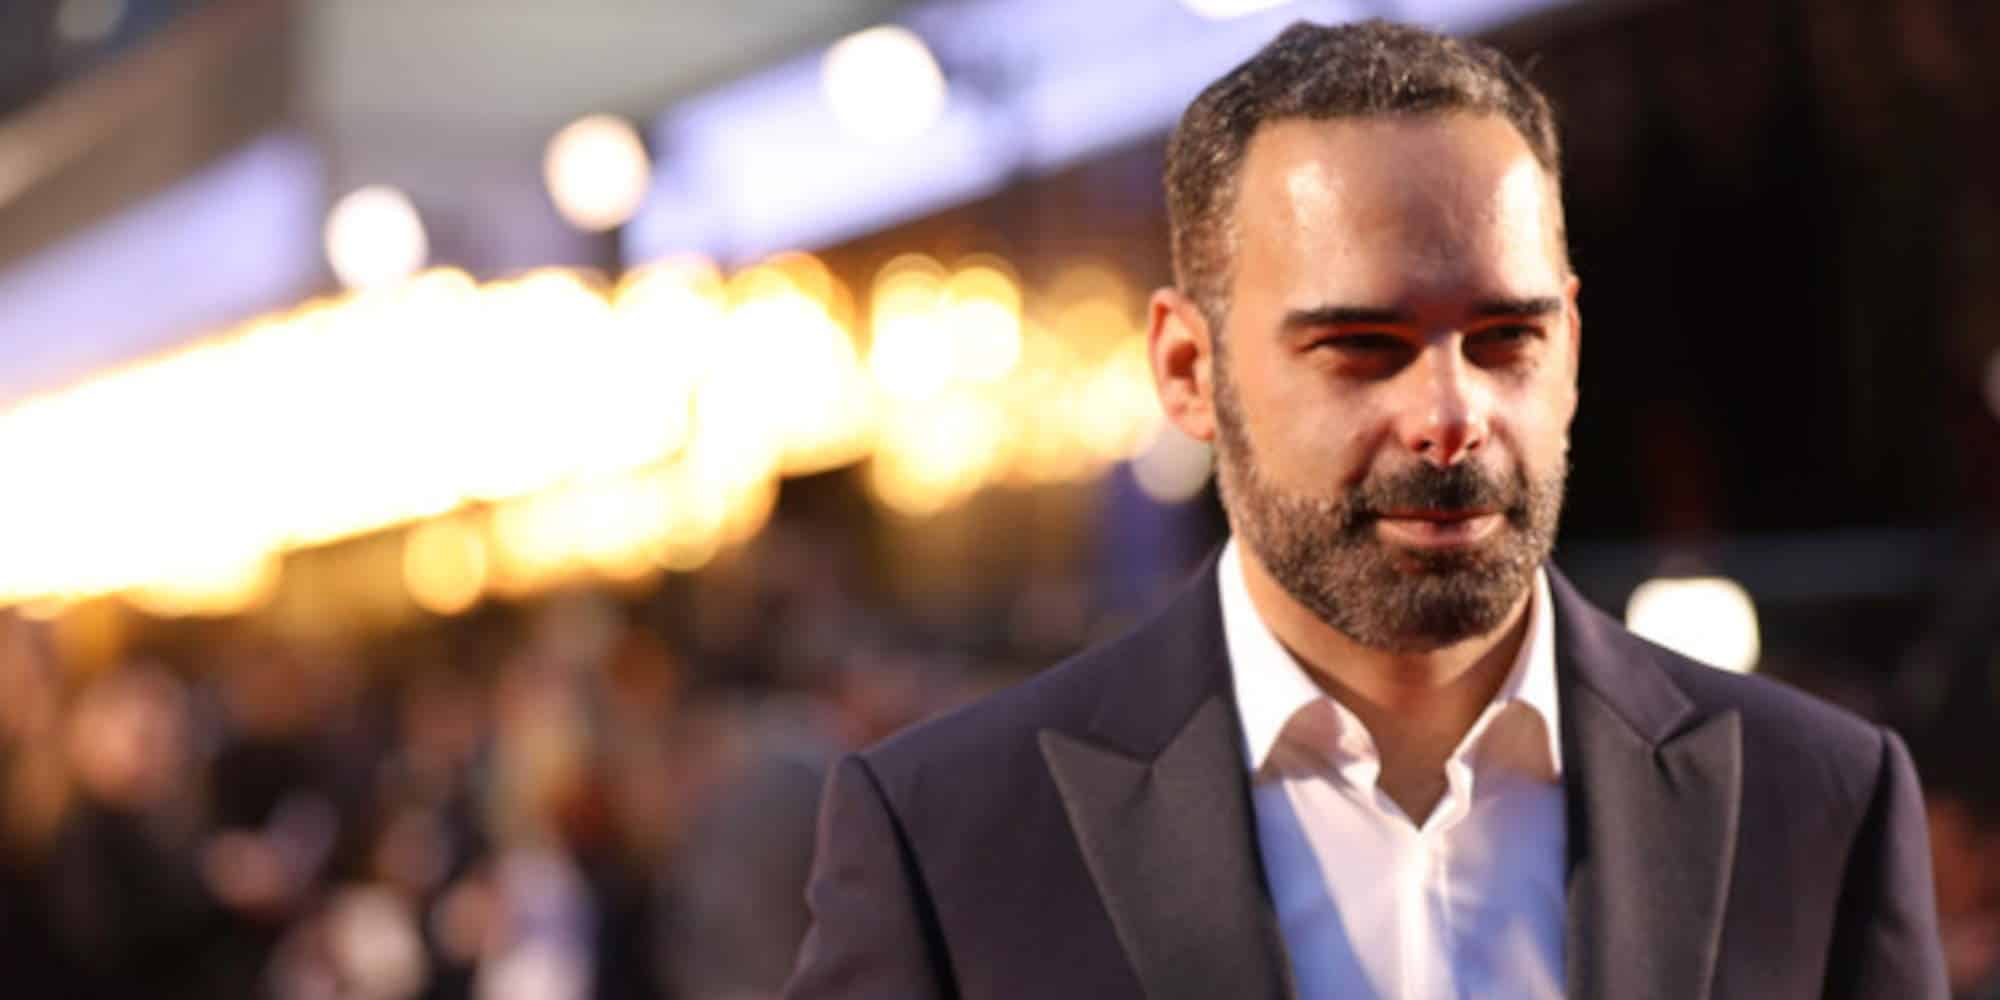 Ο Έλληνας ηθοποιός Μανώλης Εμμανουήλ, στην πρεμιέρα της ταινίας Greed που ανέβηκε στο Netflix